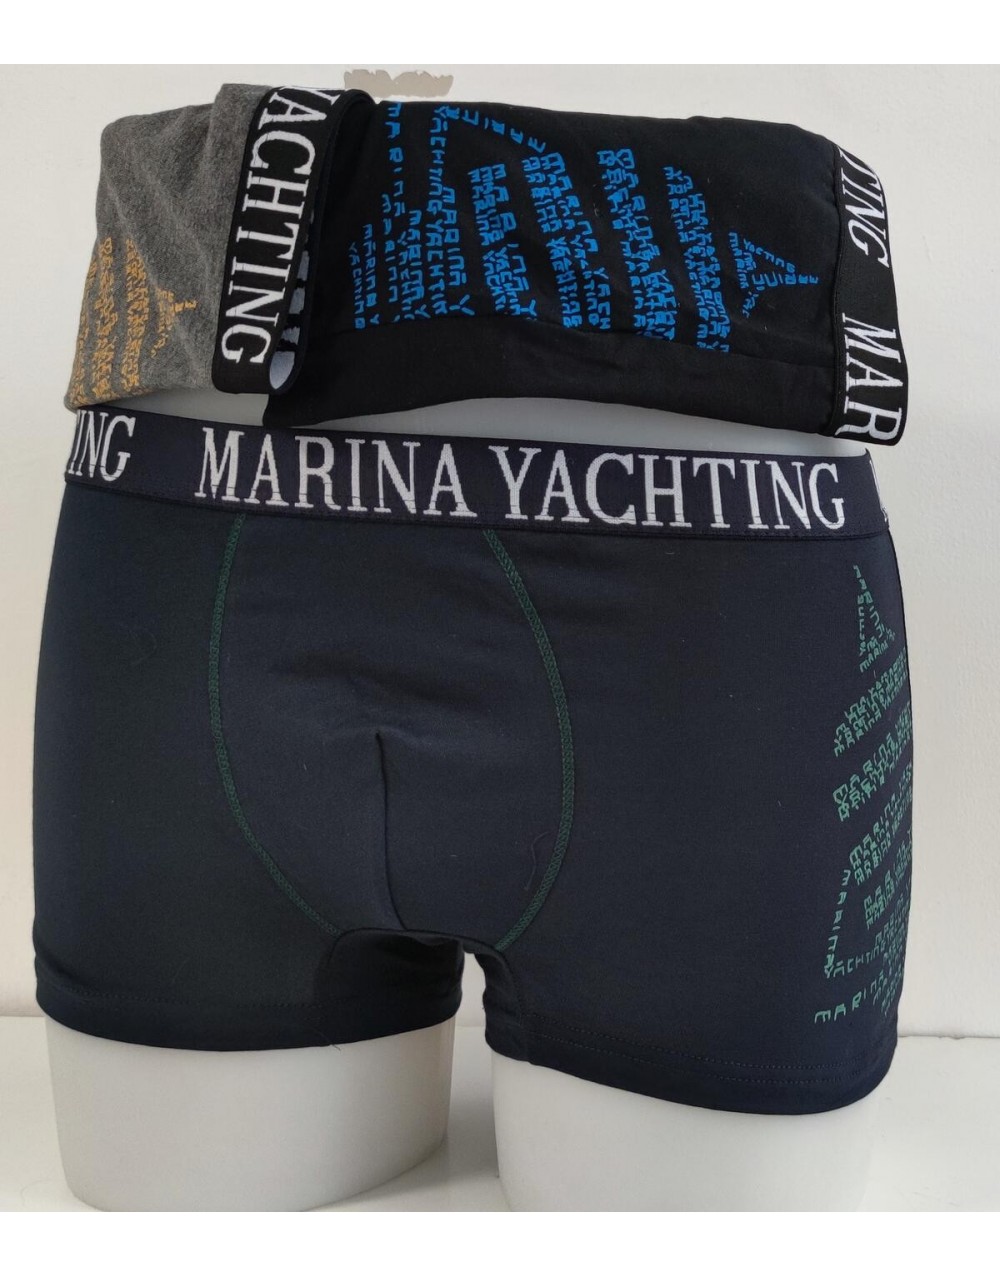 Confezione 6 Boxer uomo in cotone colori blu nero e grigio MY678 - Marina Yachting